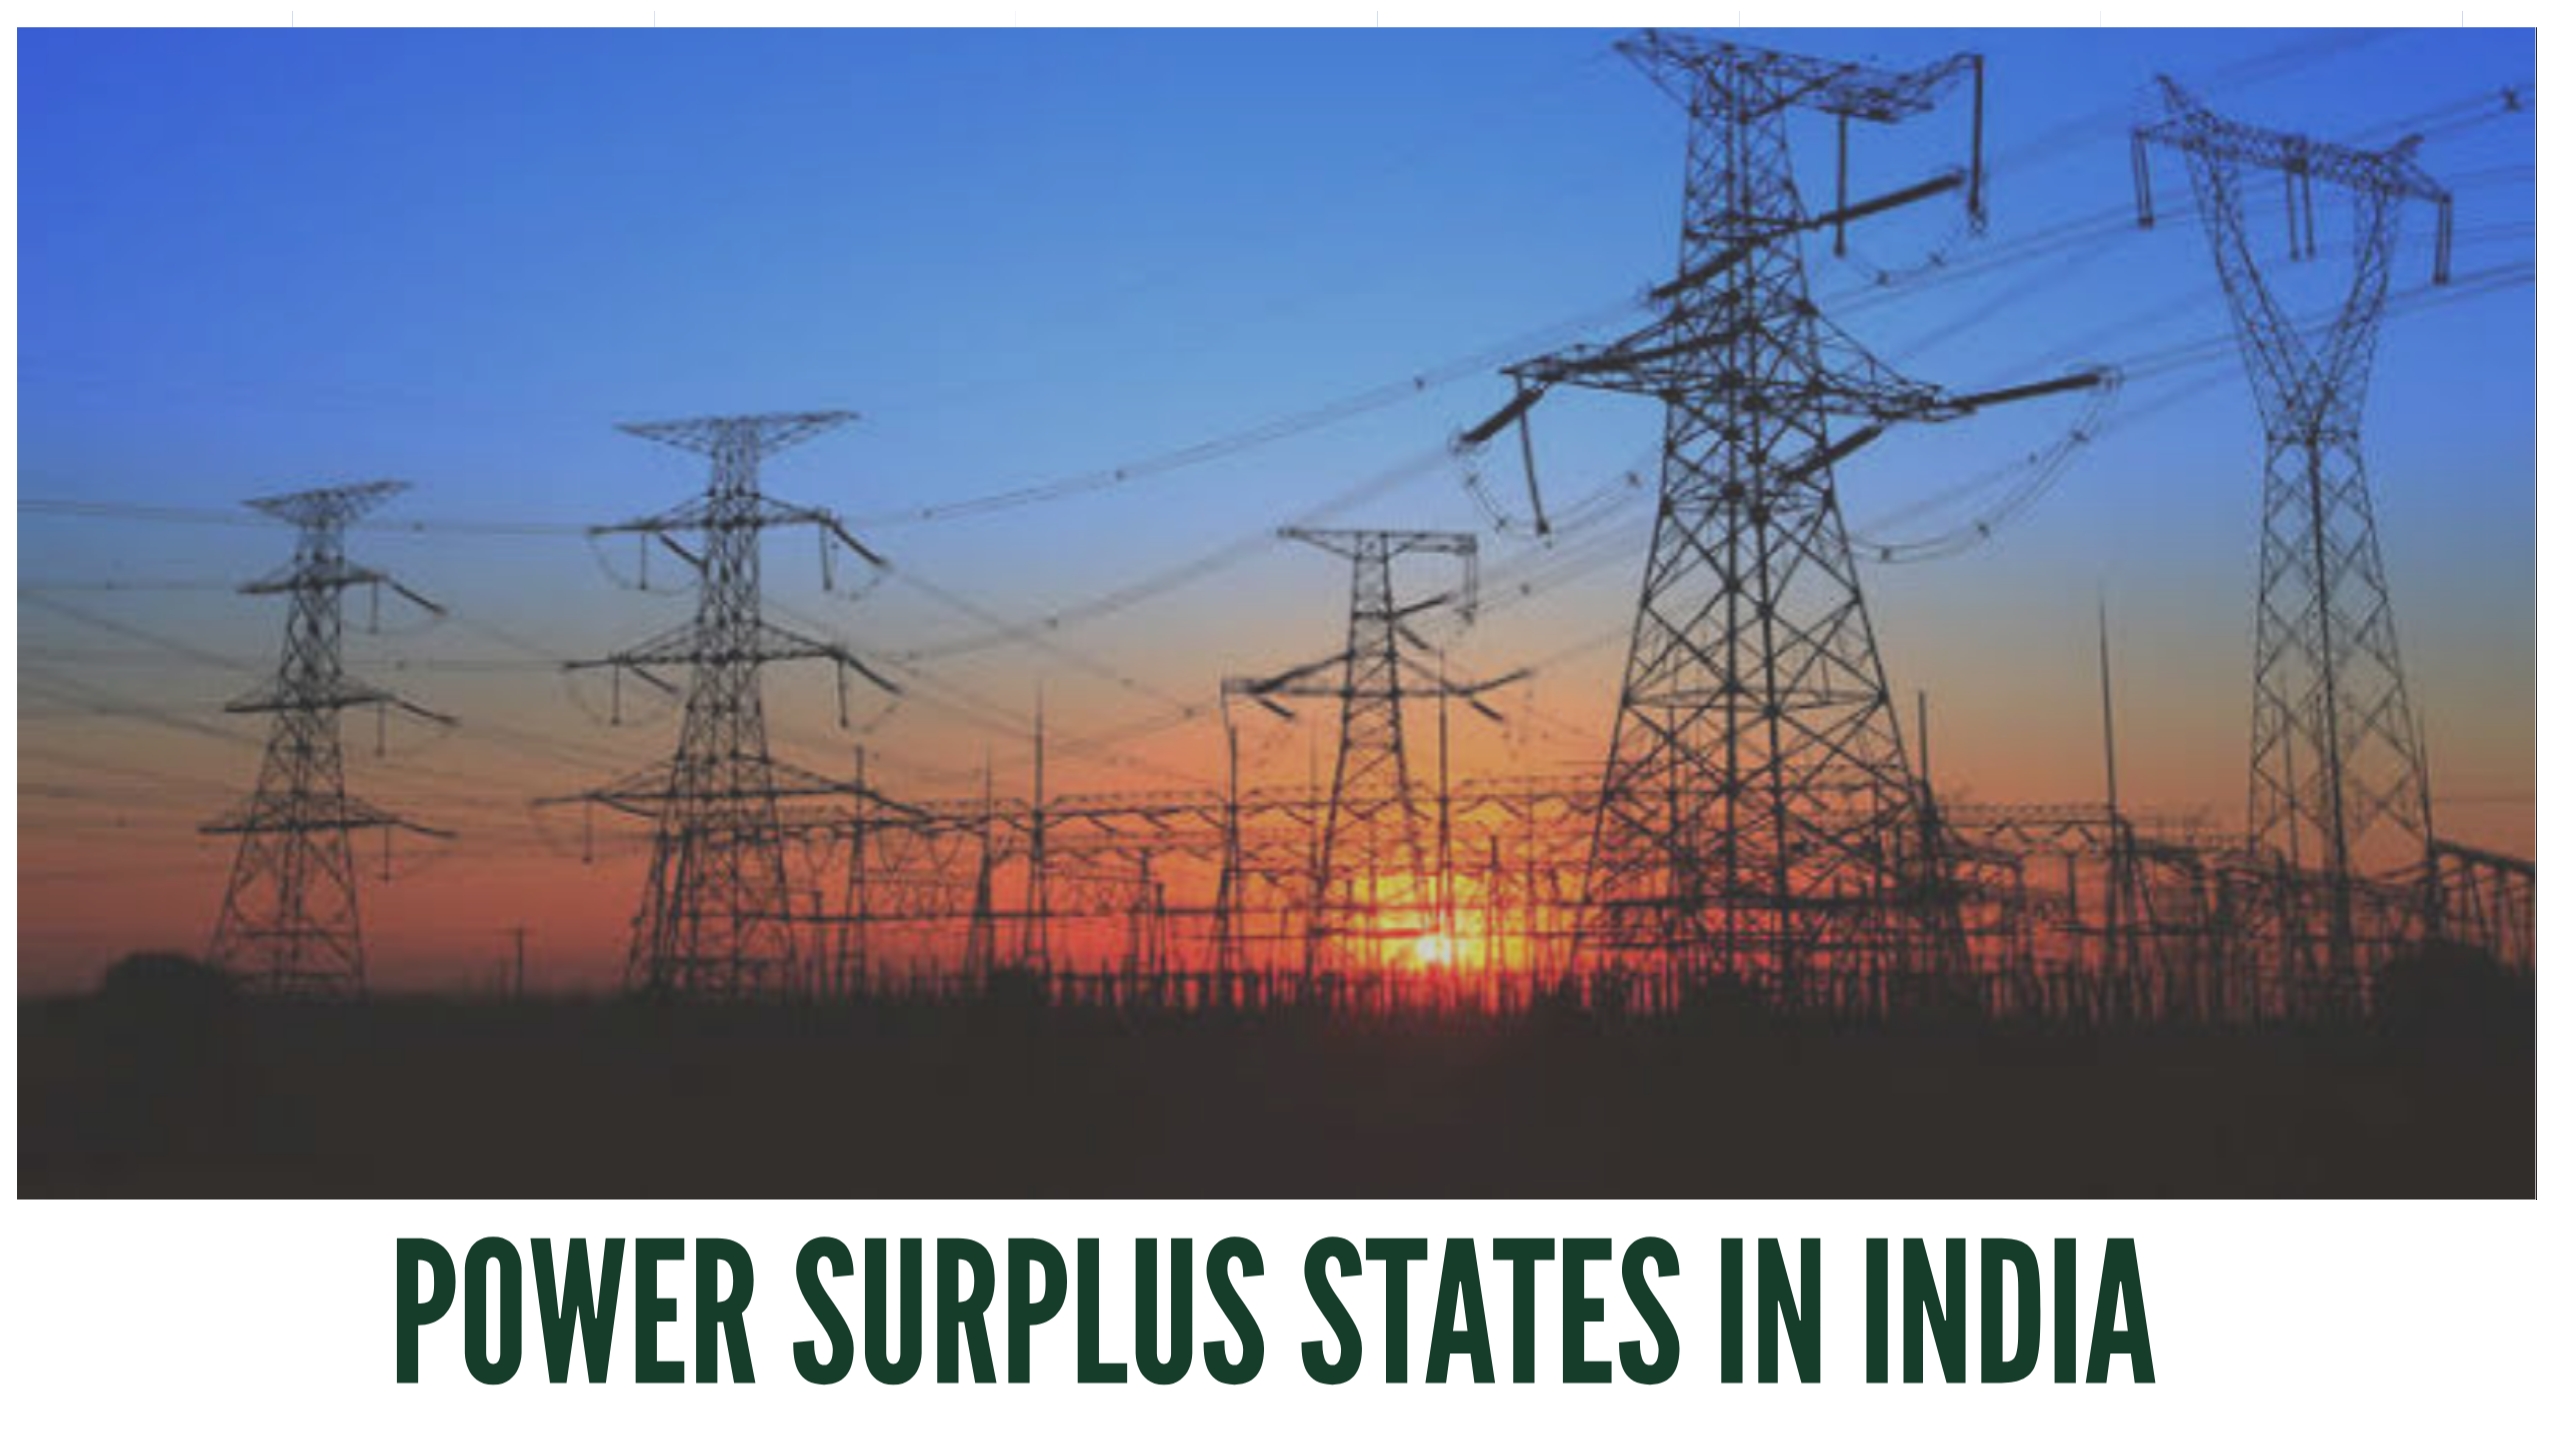 Power surplus states in India